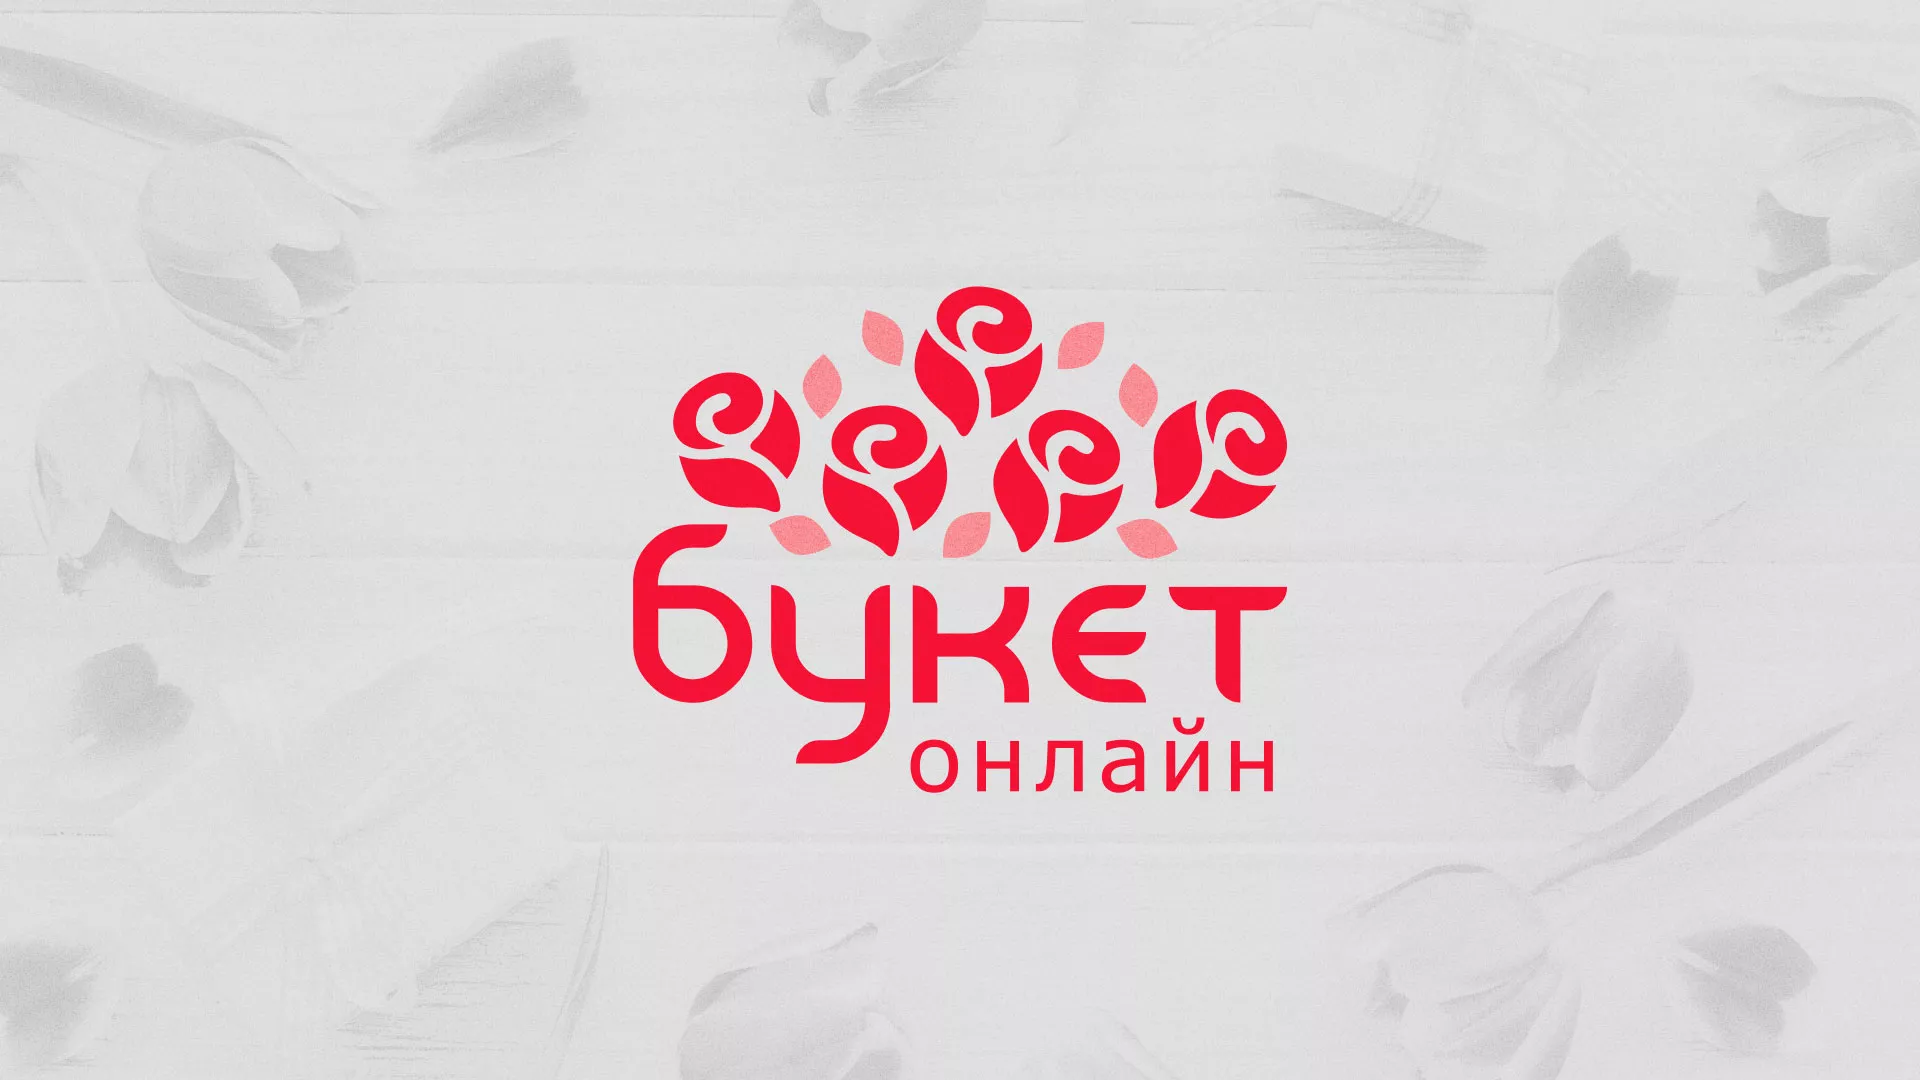 Создание интернет-магазина «Букет-онлайн» по цветам в Бокситогорске